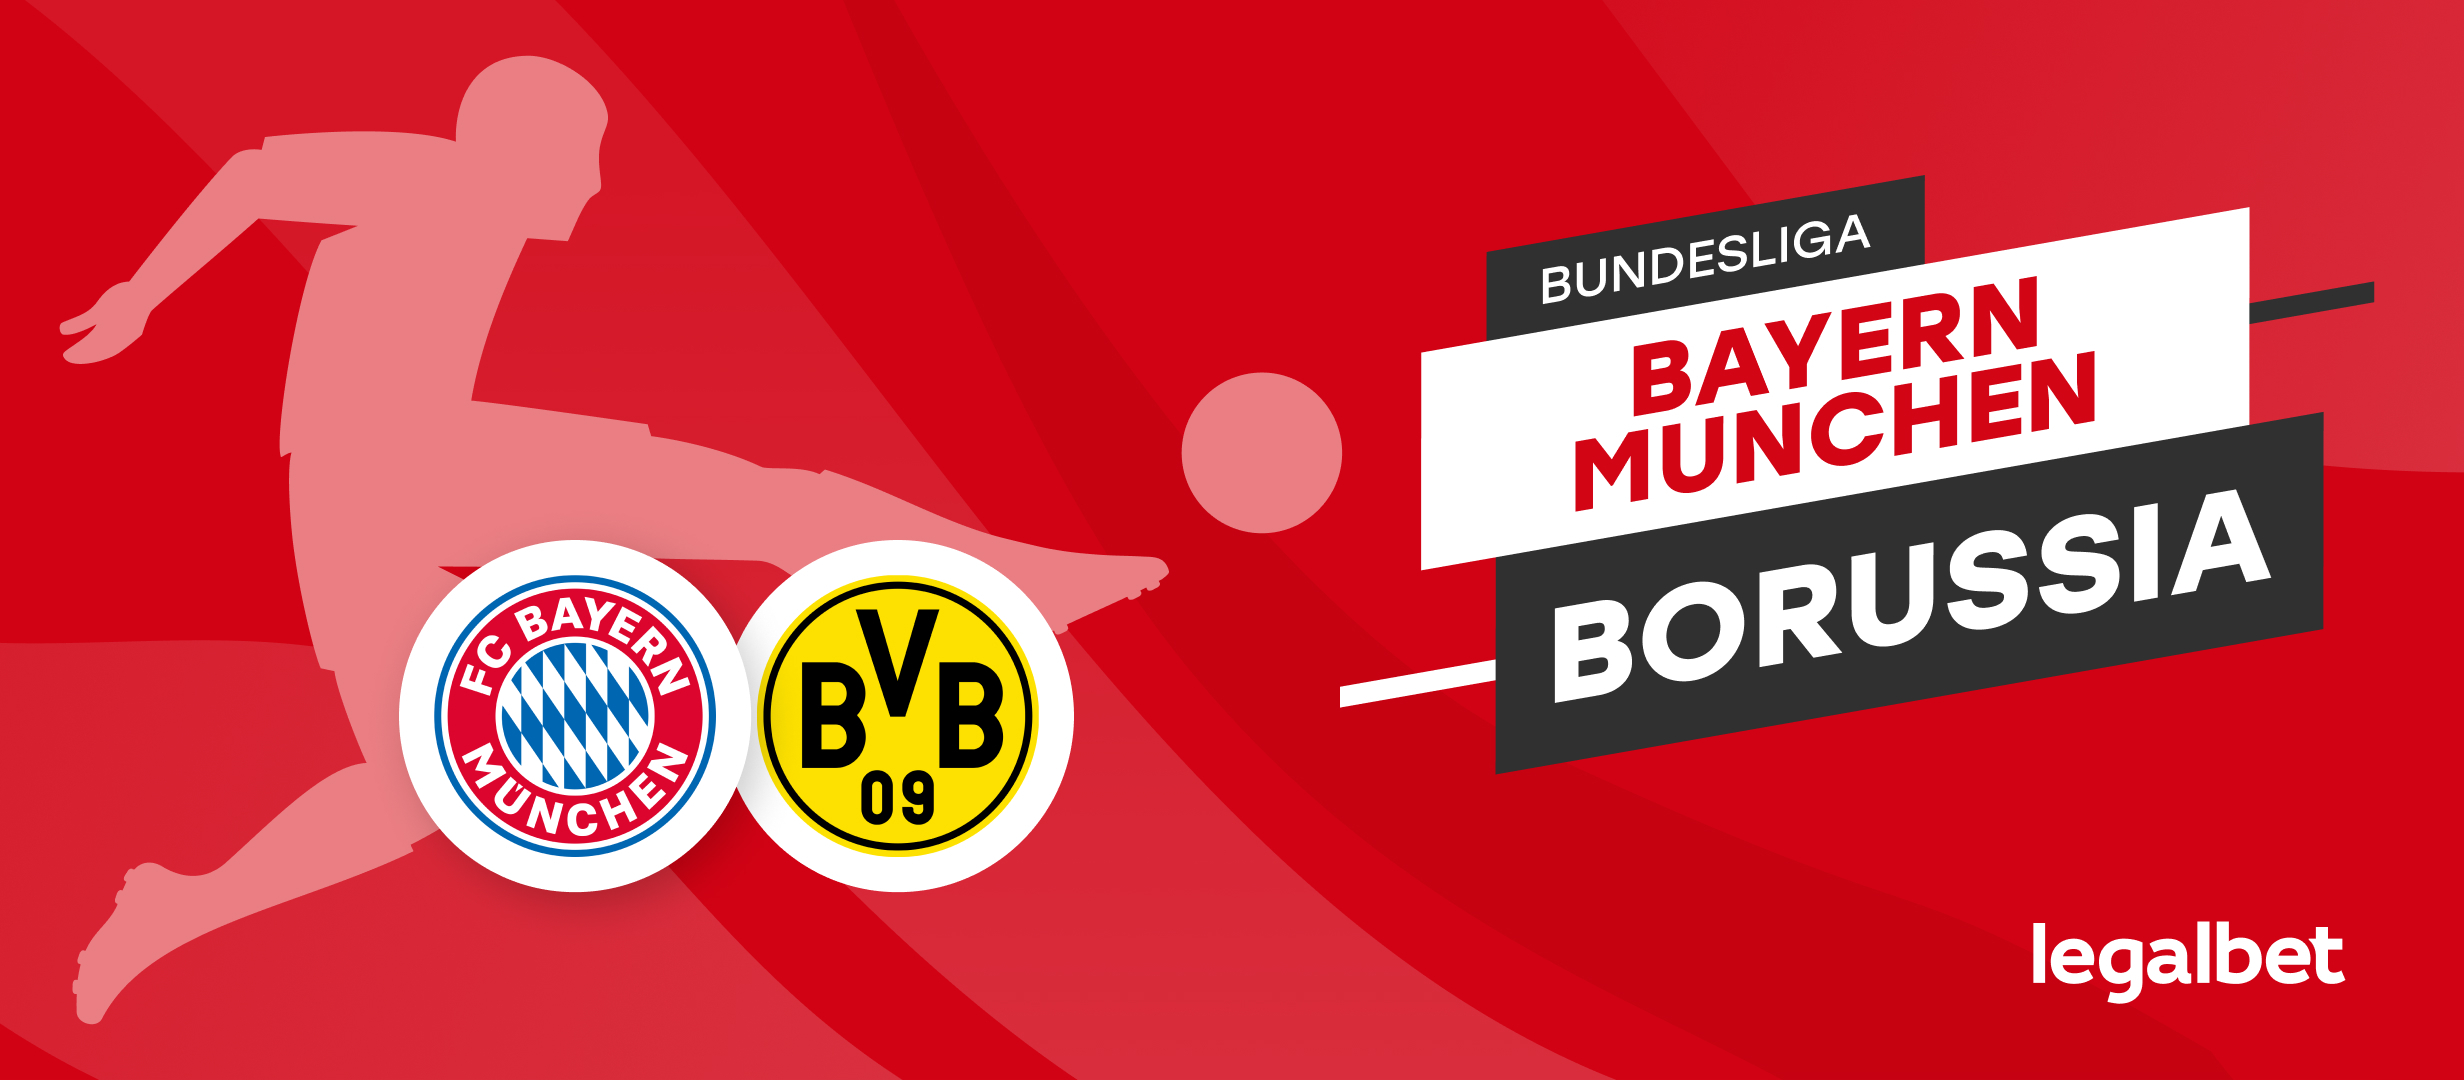 Bayern Munchen vs Borussia Dortmund, cele mai tari pronosticuri și informații pentru cel mai tare meci din weekend!